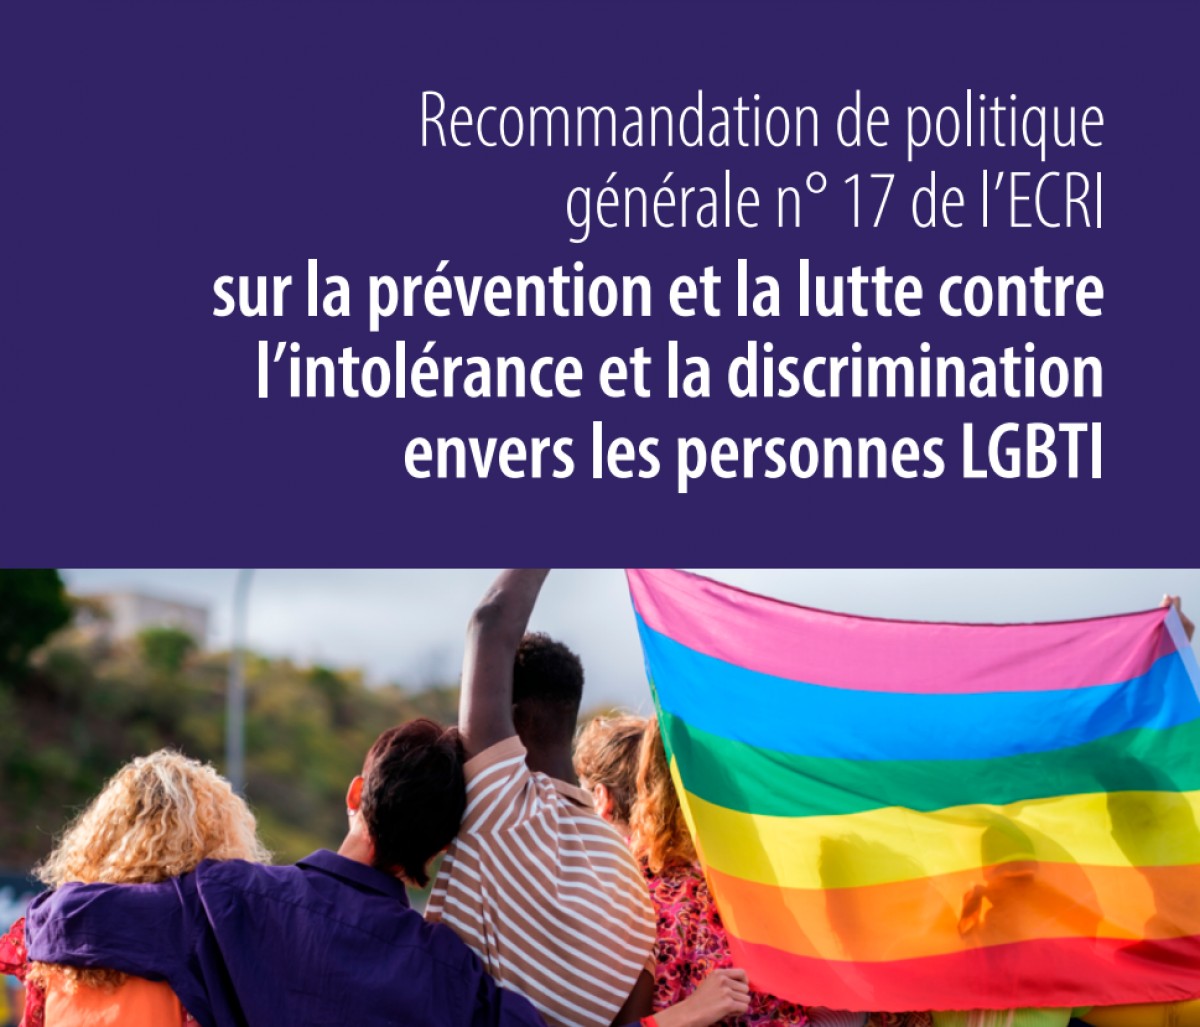 La Commission européenne contre le racisme et l'intolérance publie de nouvelles recommandations afin de combattre la discrimination LGBT+